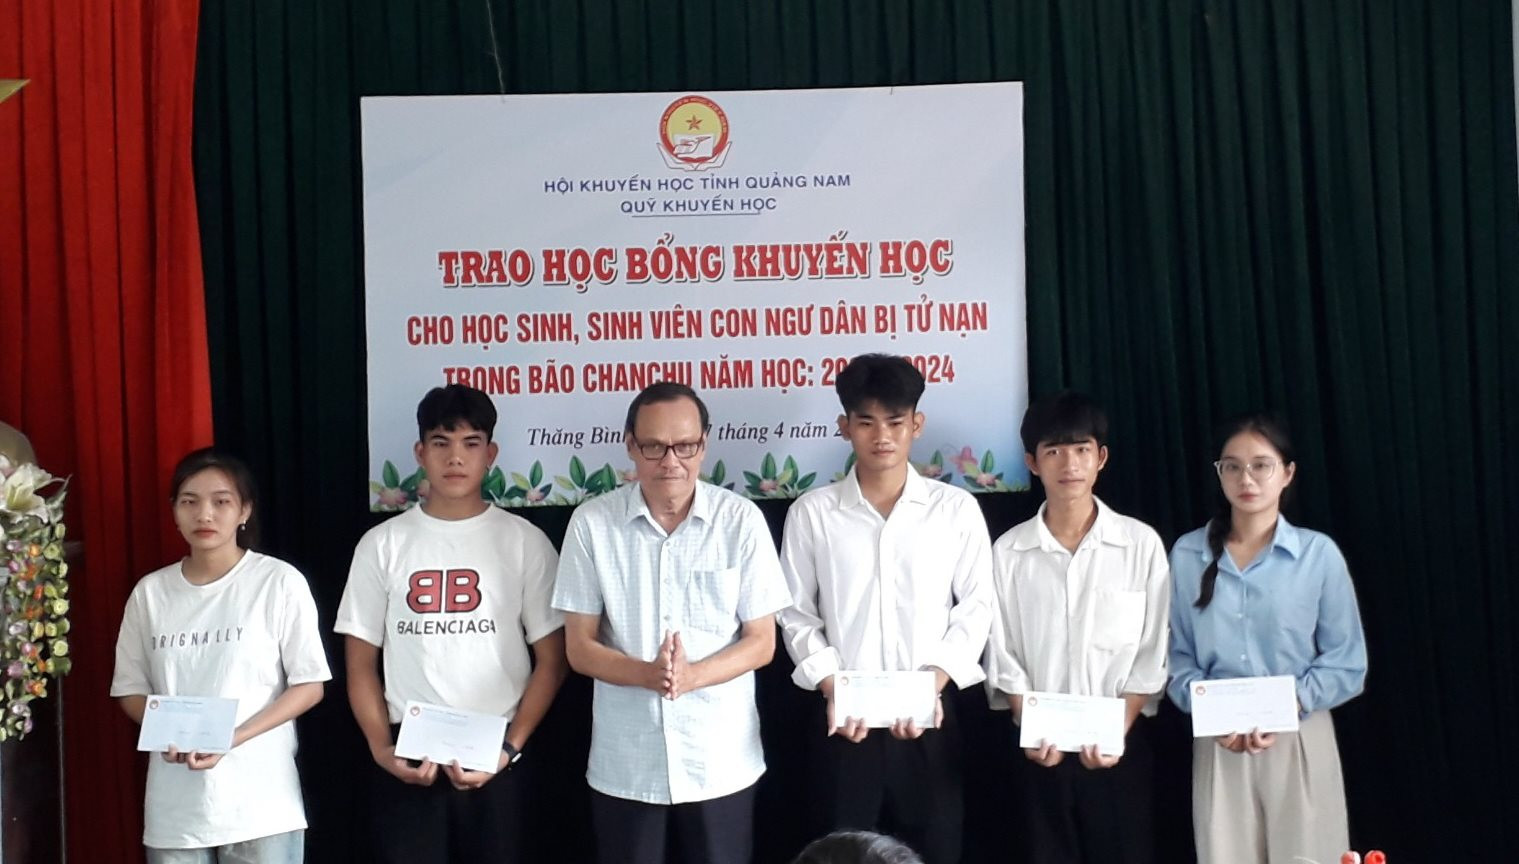  Huyện Thăng Bình có 25 học sinh, sinh viên con ngư dân tử nạn bão Chanchu. Ảnh: HN